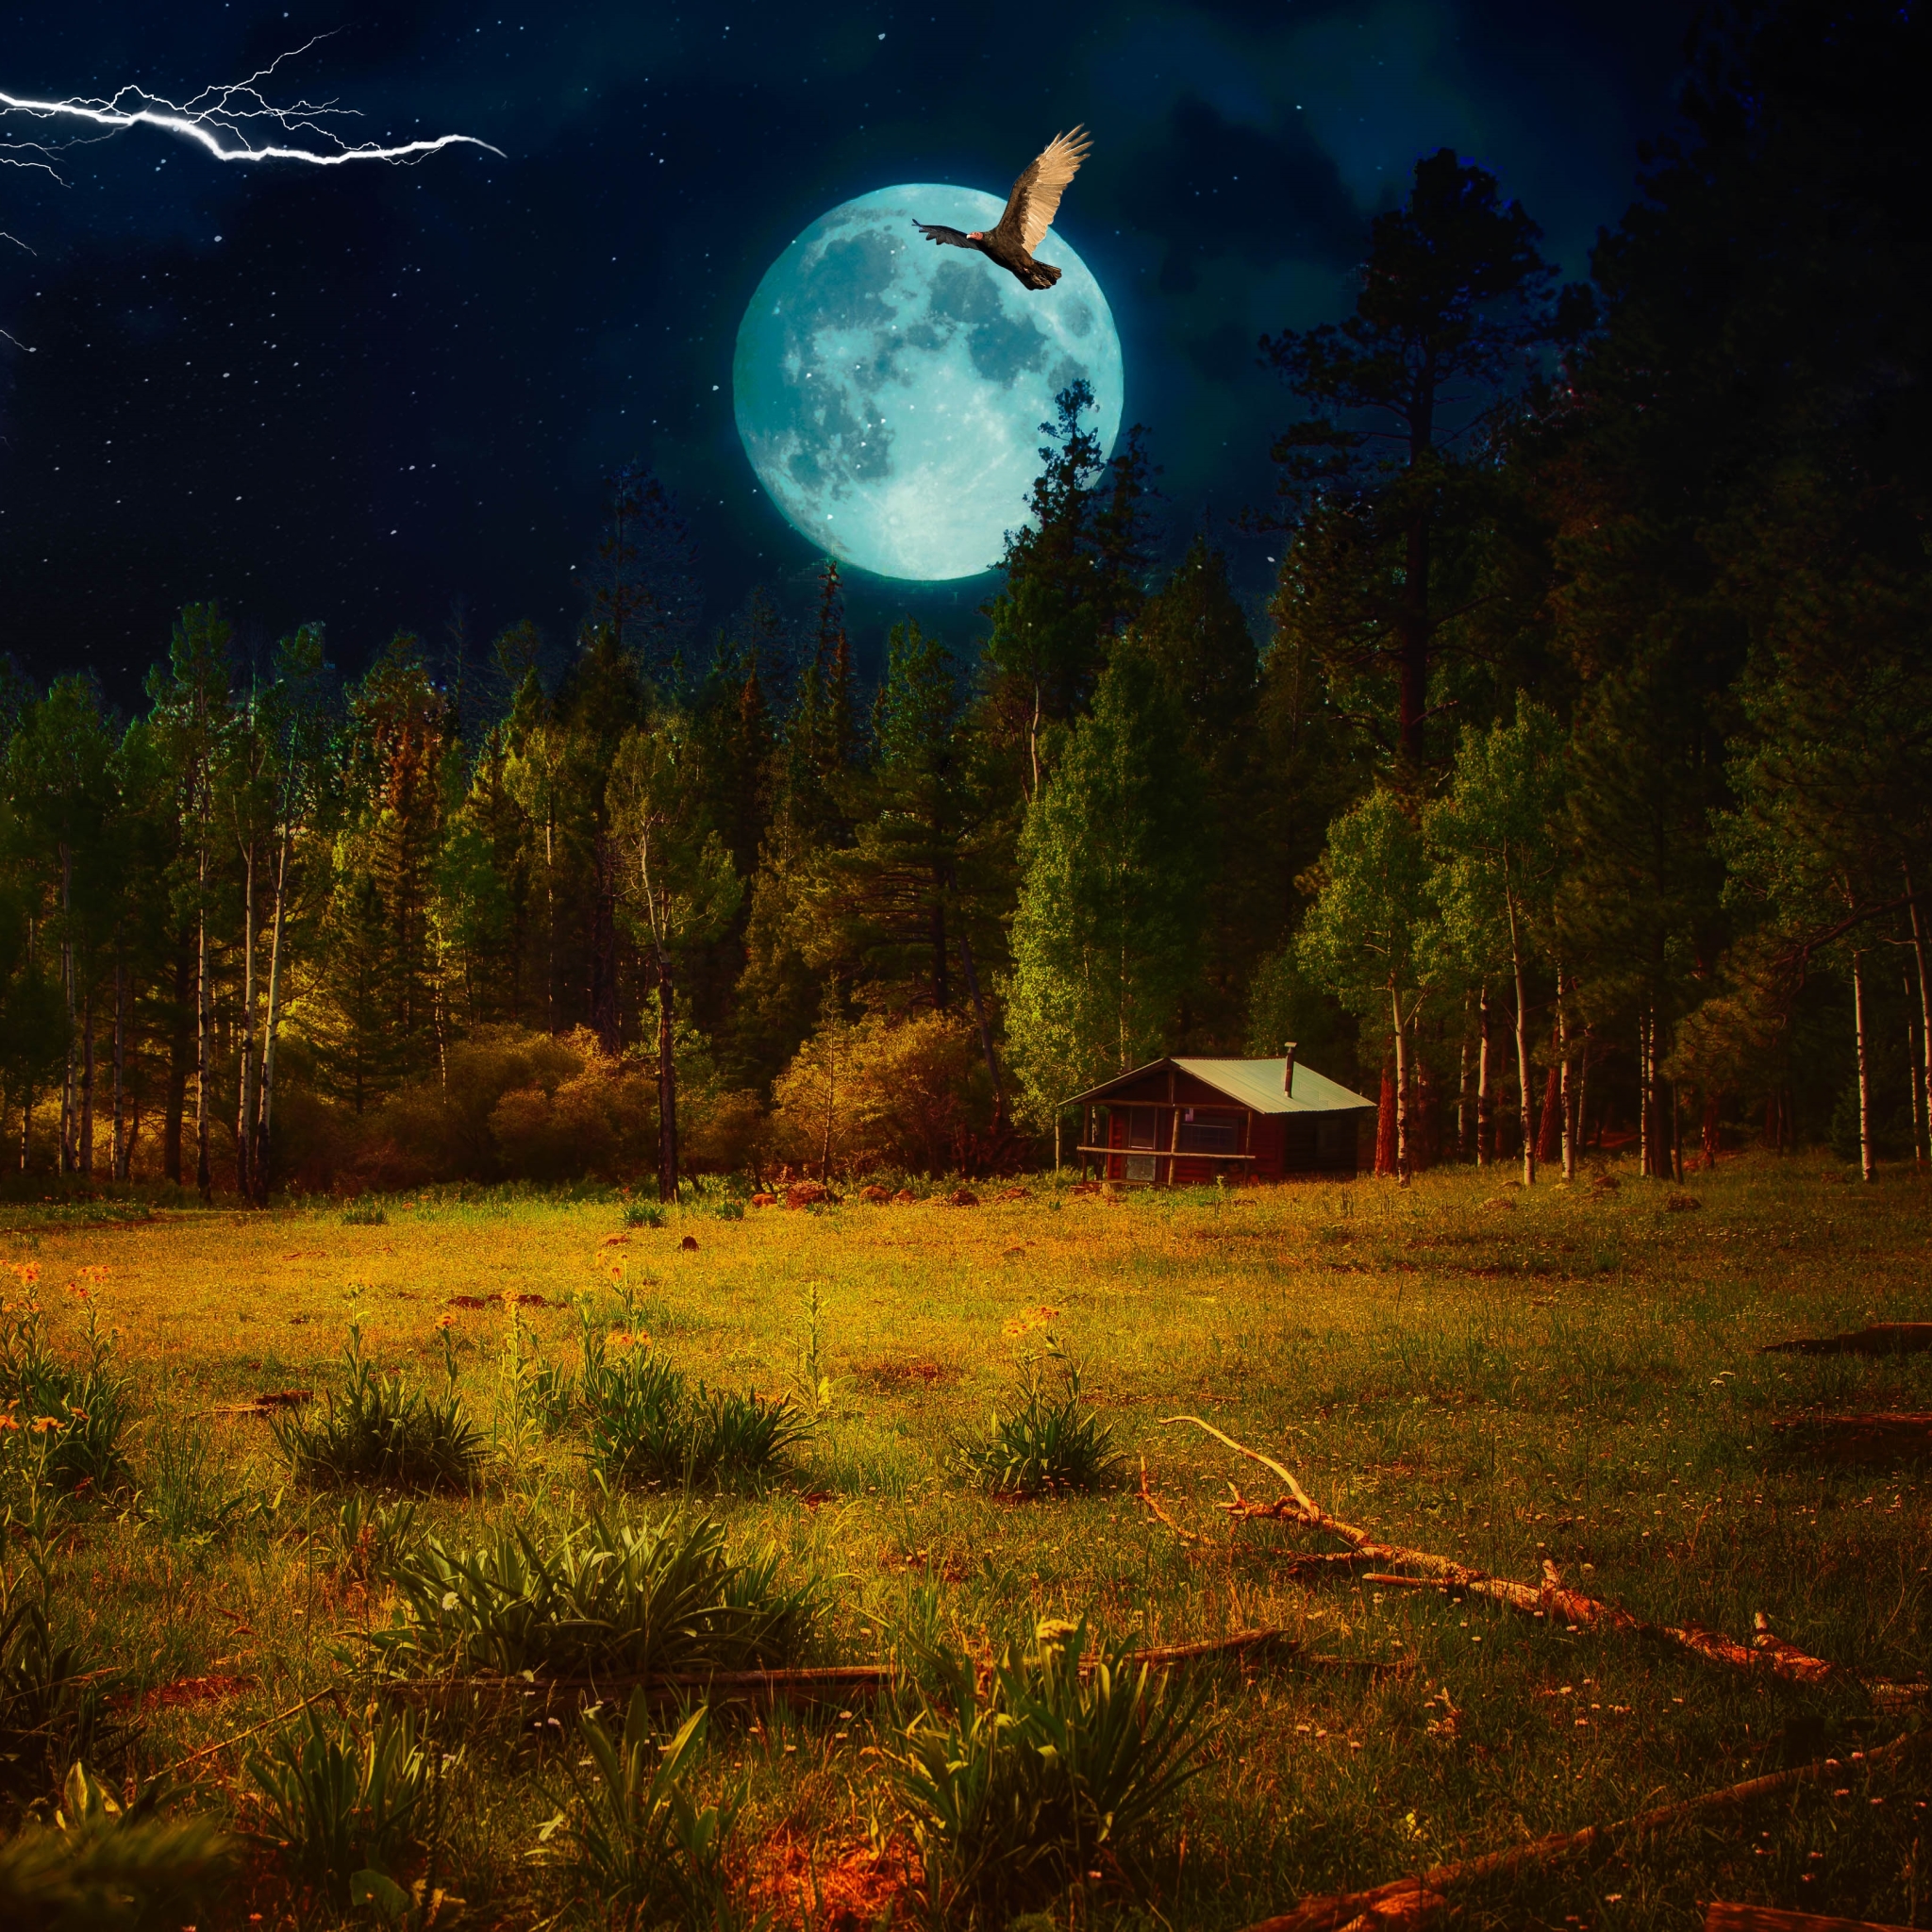 Night Landscape by Monty Jackson